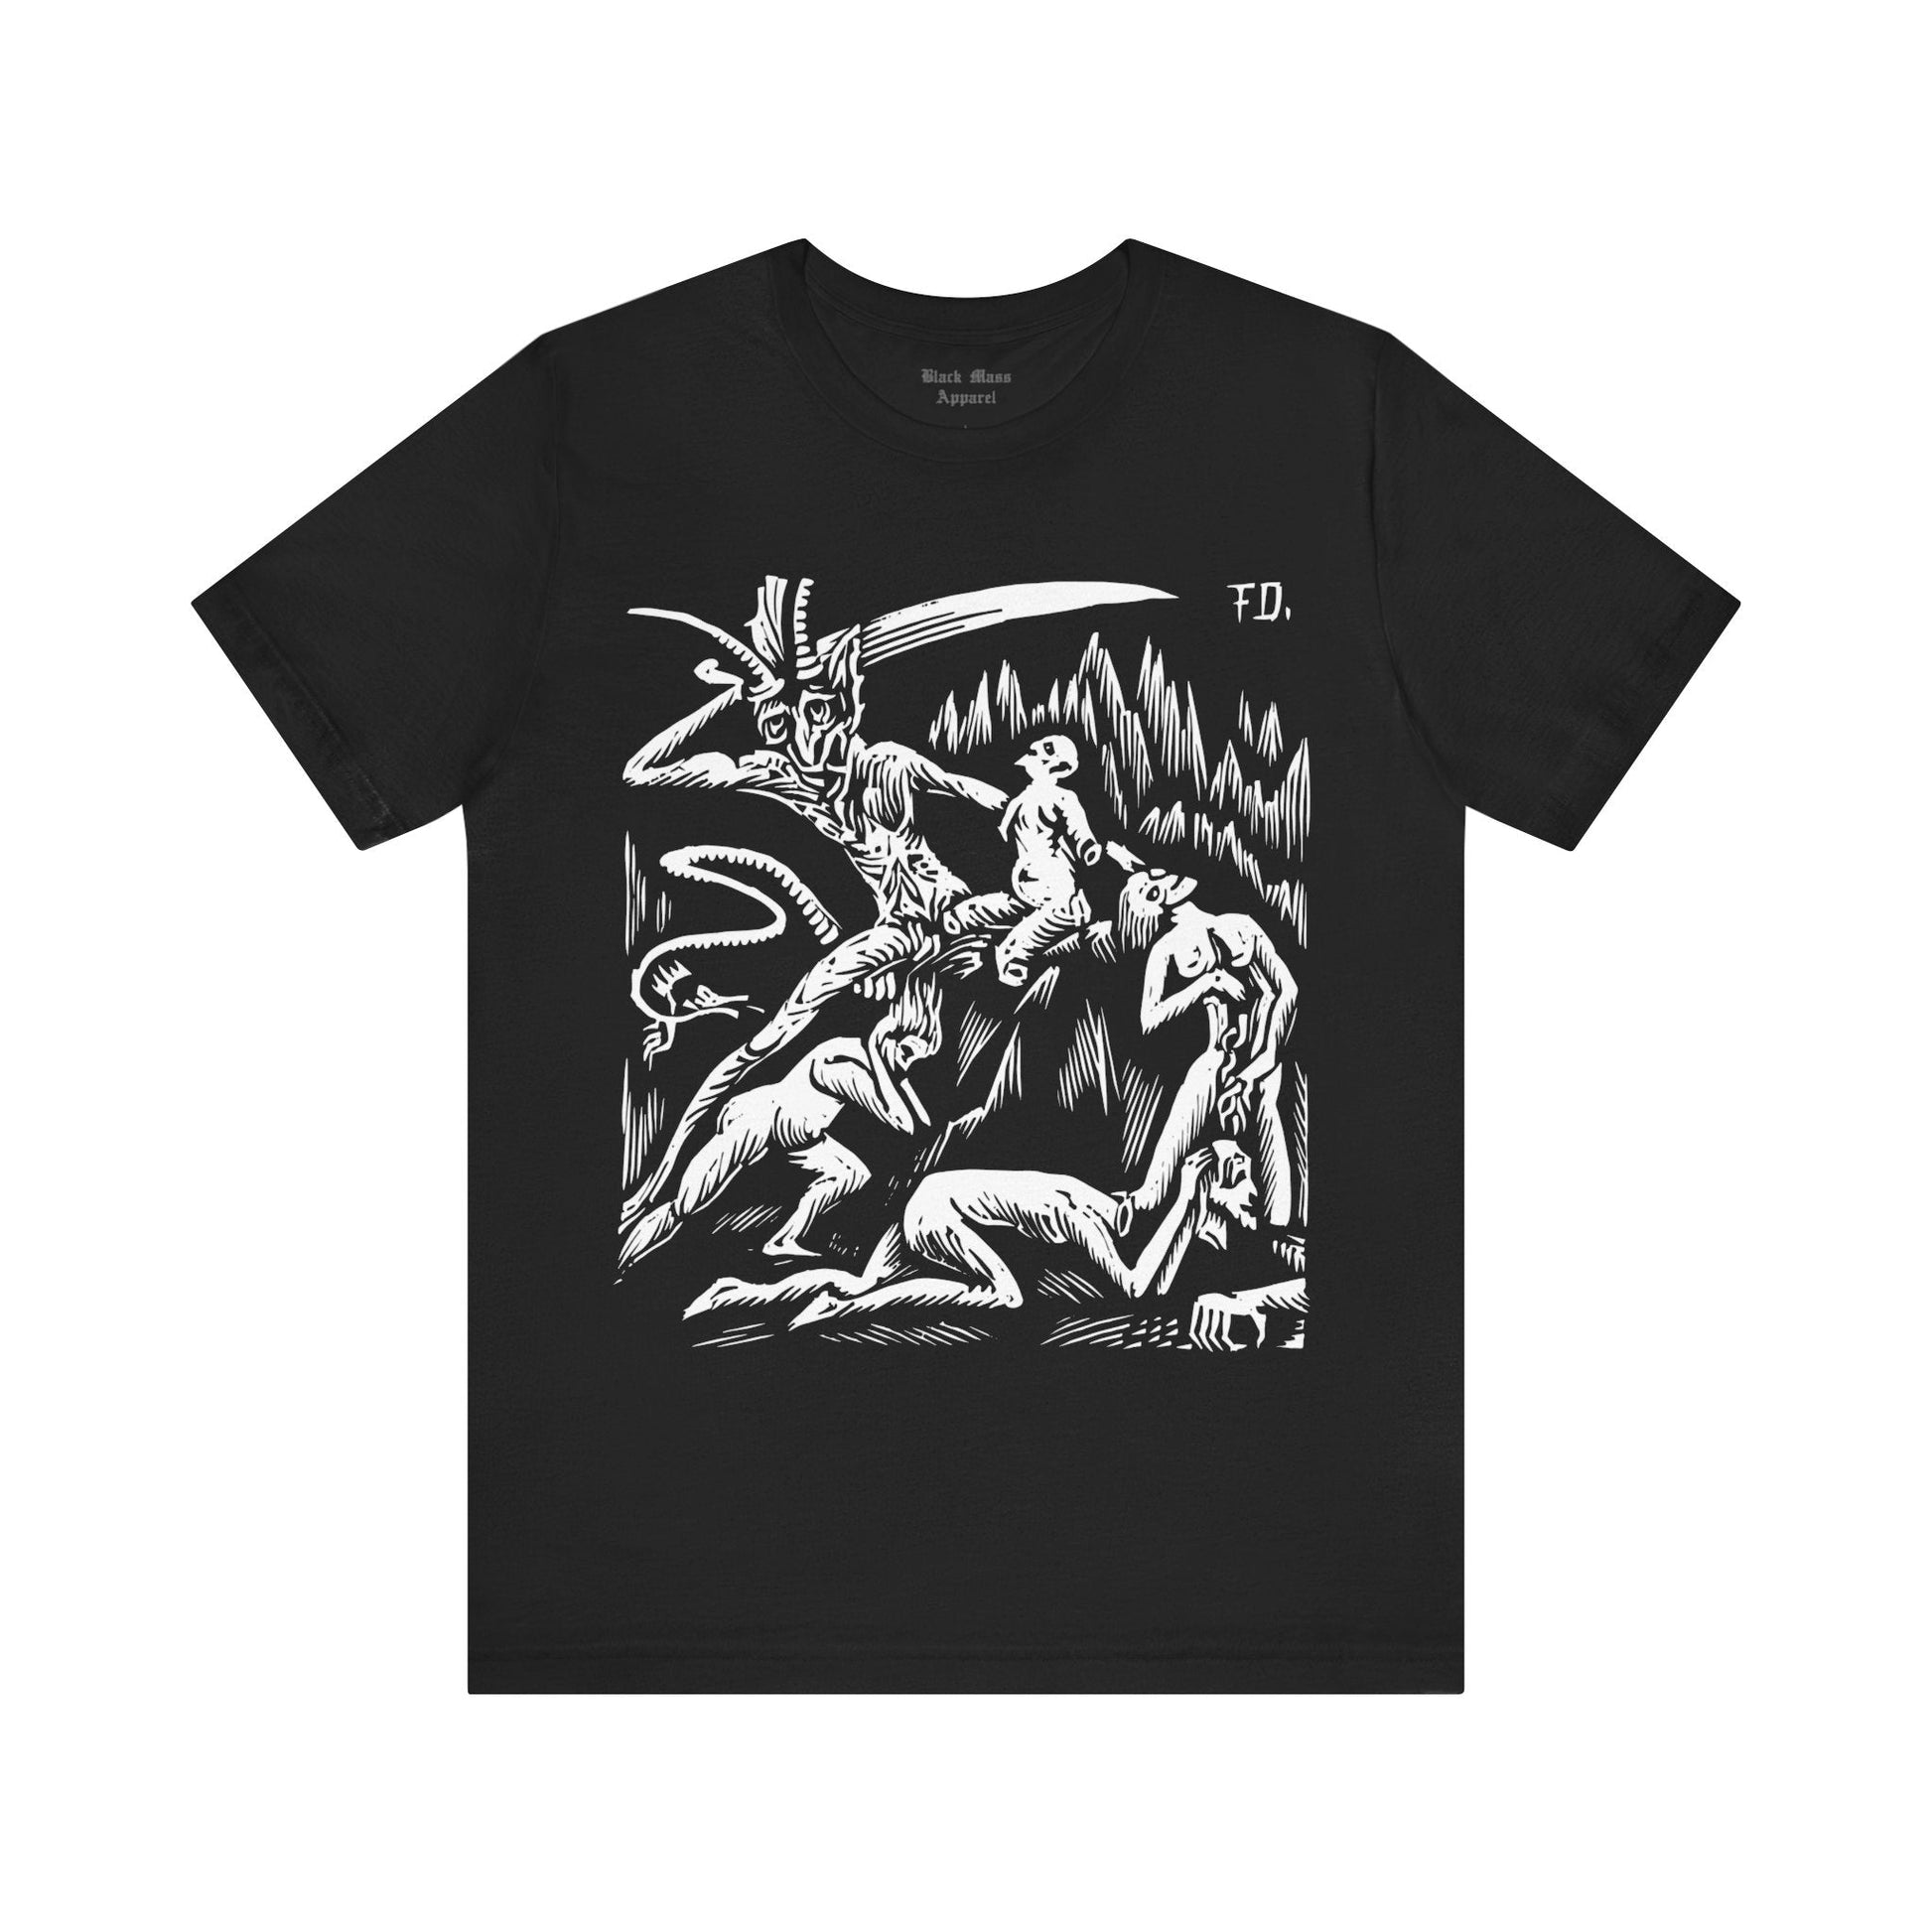 Hell XXVIII - Black Mass Apparel - T-Shirt